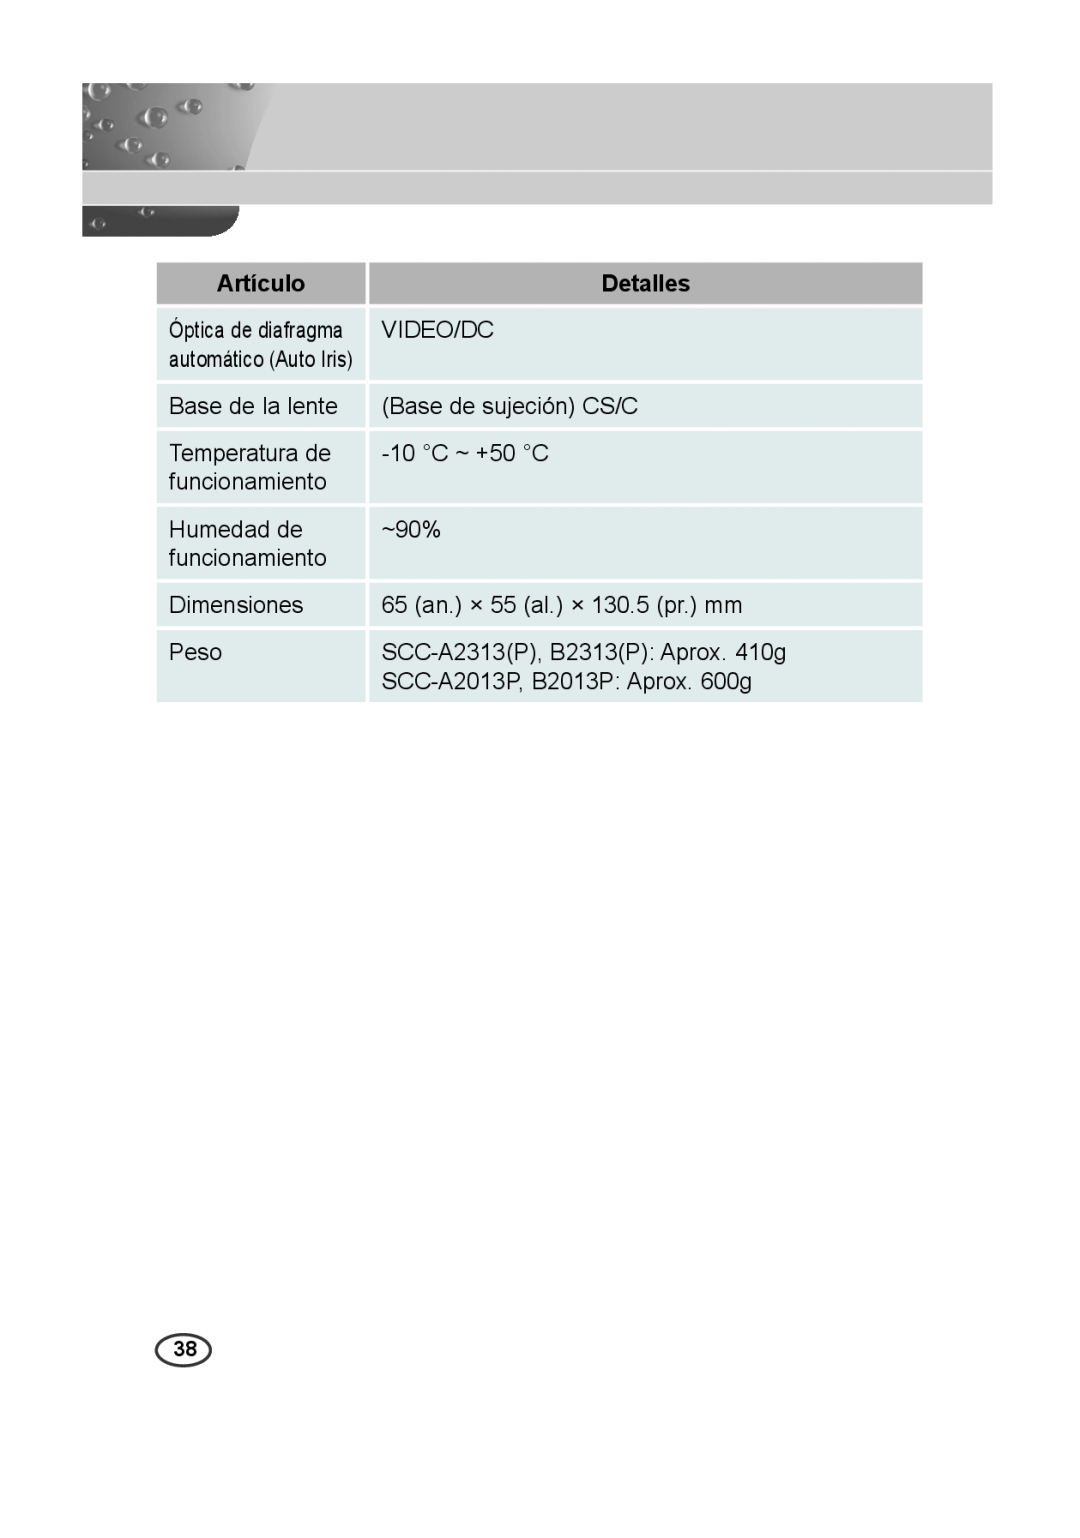 Samsung SCC-A2013P manual Artículo, Detalles, Óptica de diafragma, automático Auto Iris, SCC-A2313P, B2313P Aprox. 410g 